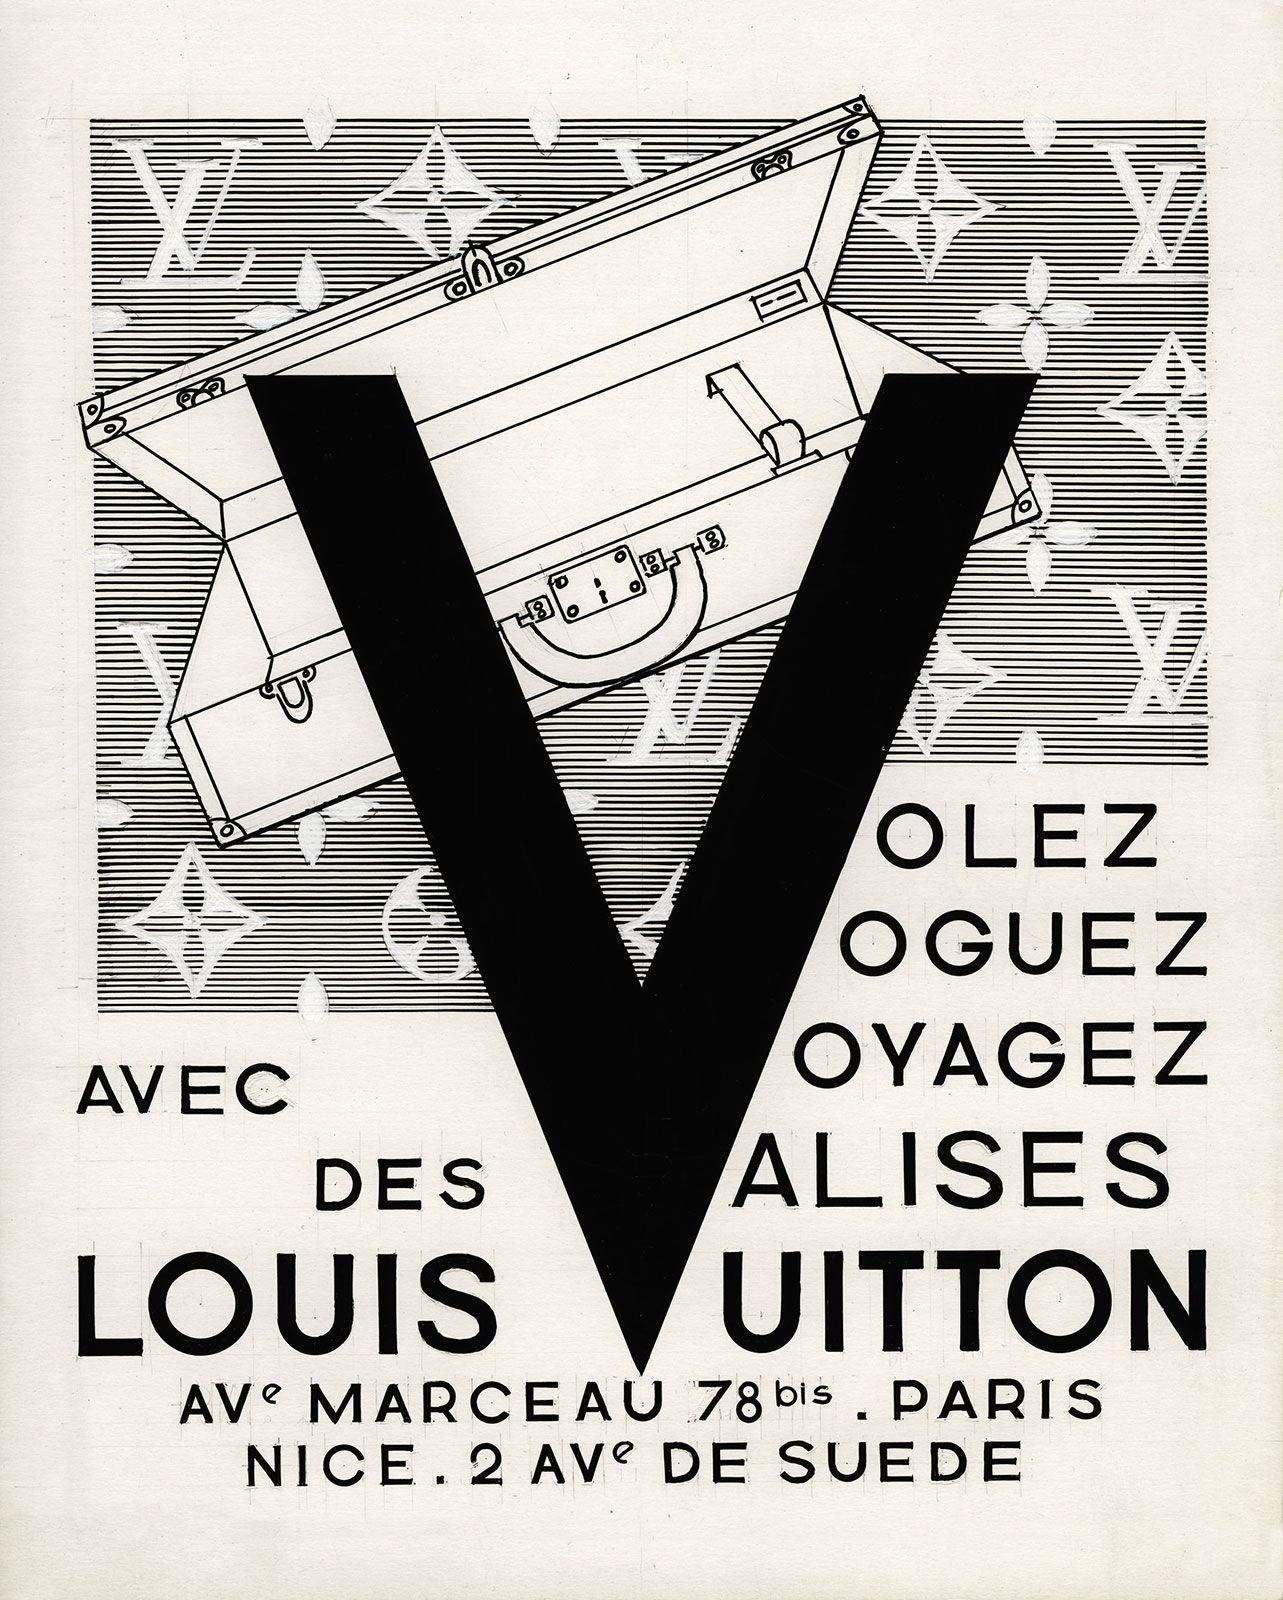 Louis Vuitton Volez Voguez Voyagez